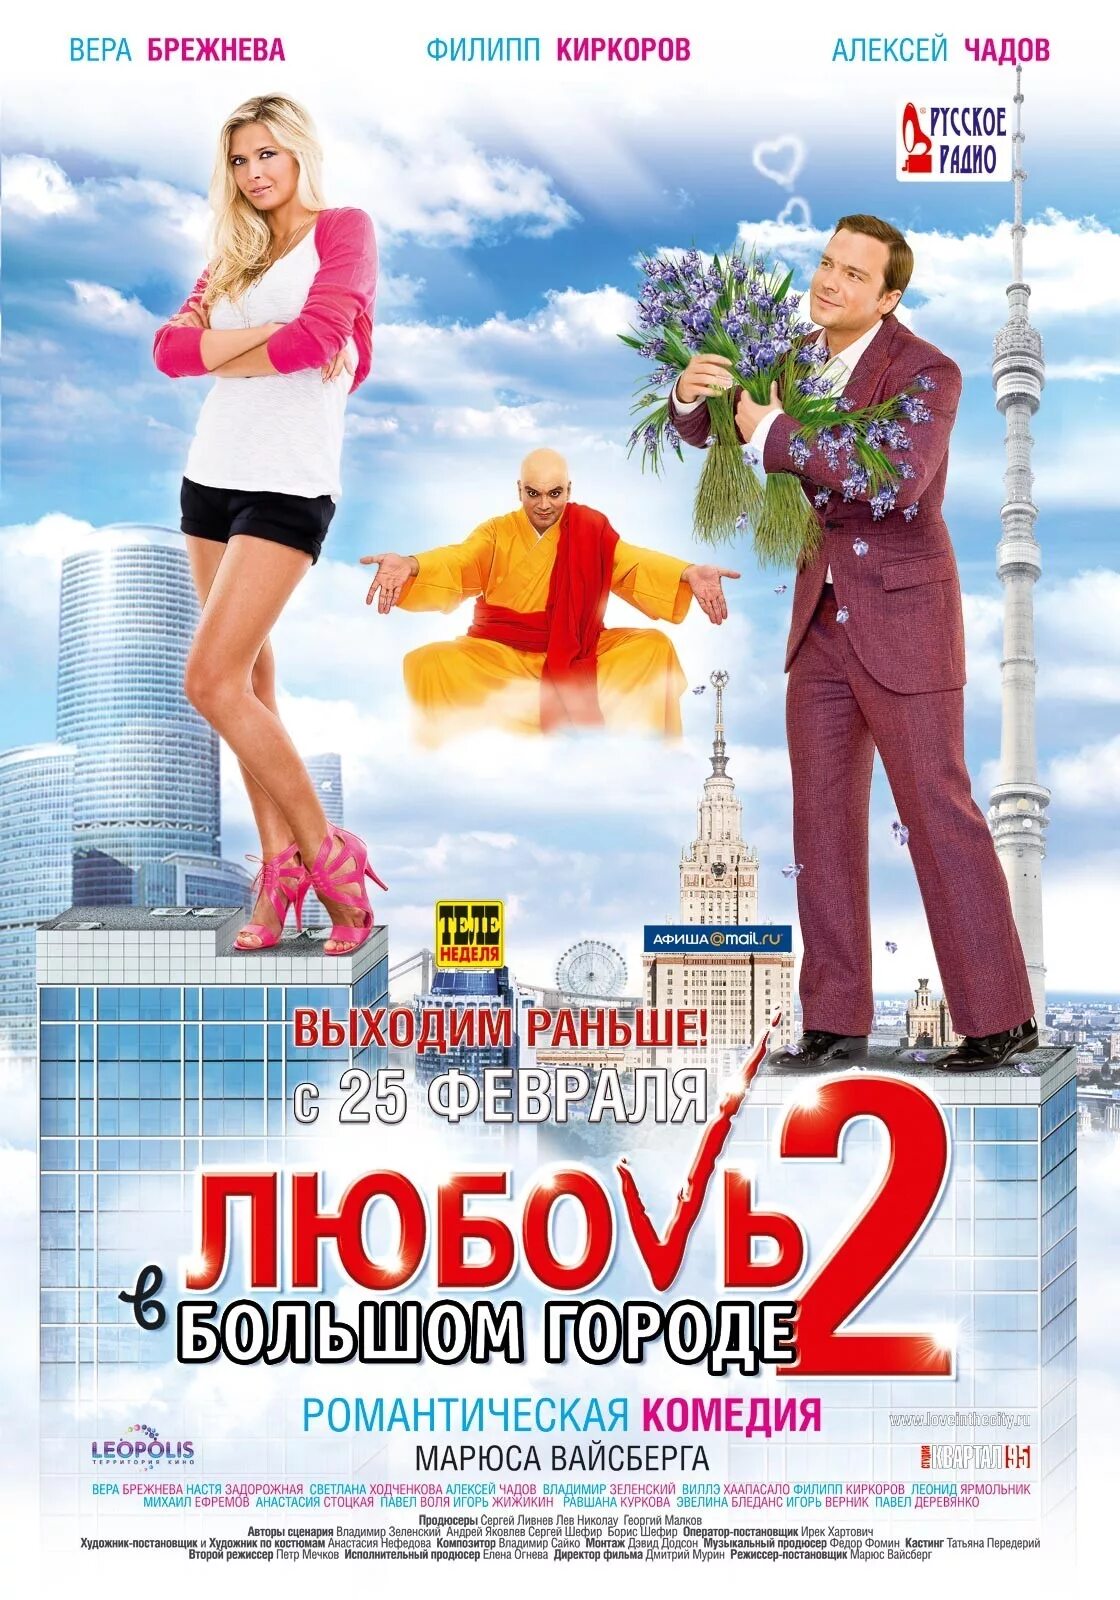 Название комедии. Любовь в большом городе 2 (2010) Постер. Любовь в большом городе 2009.